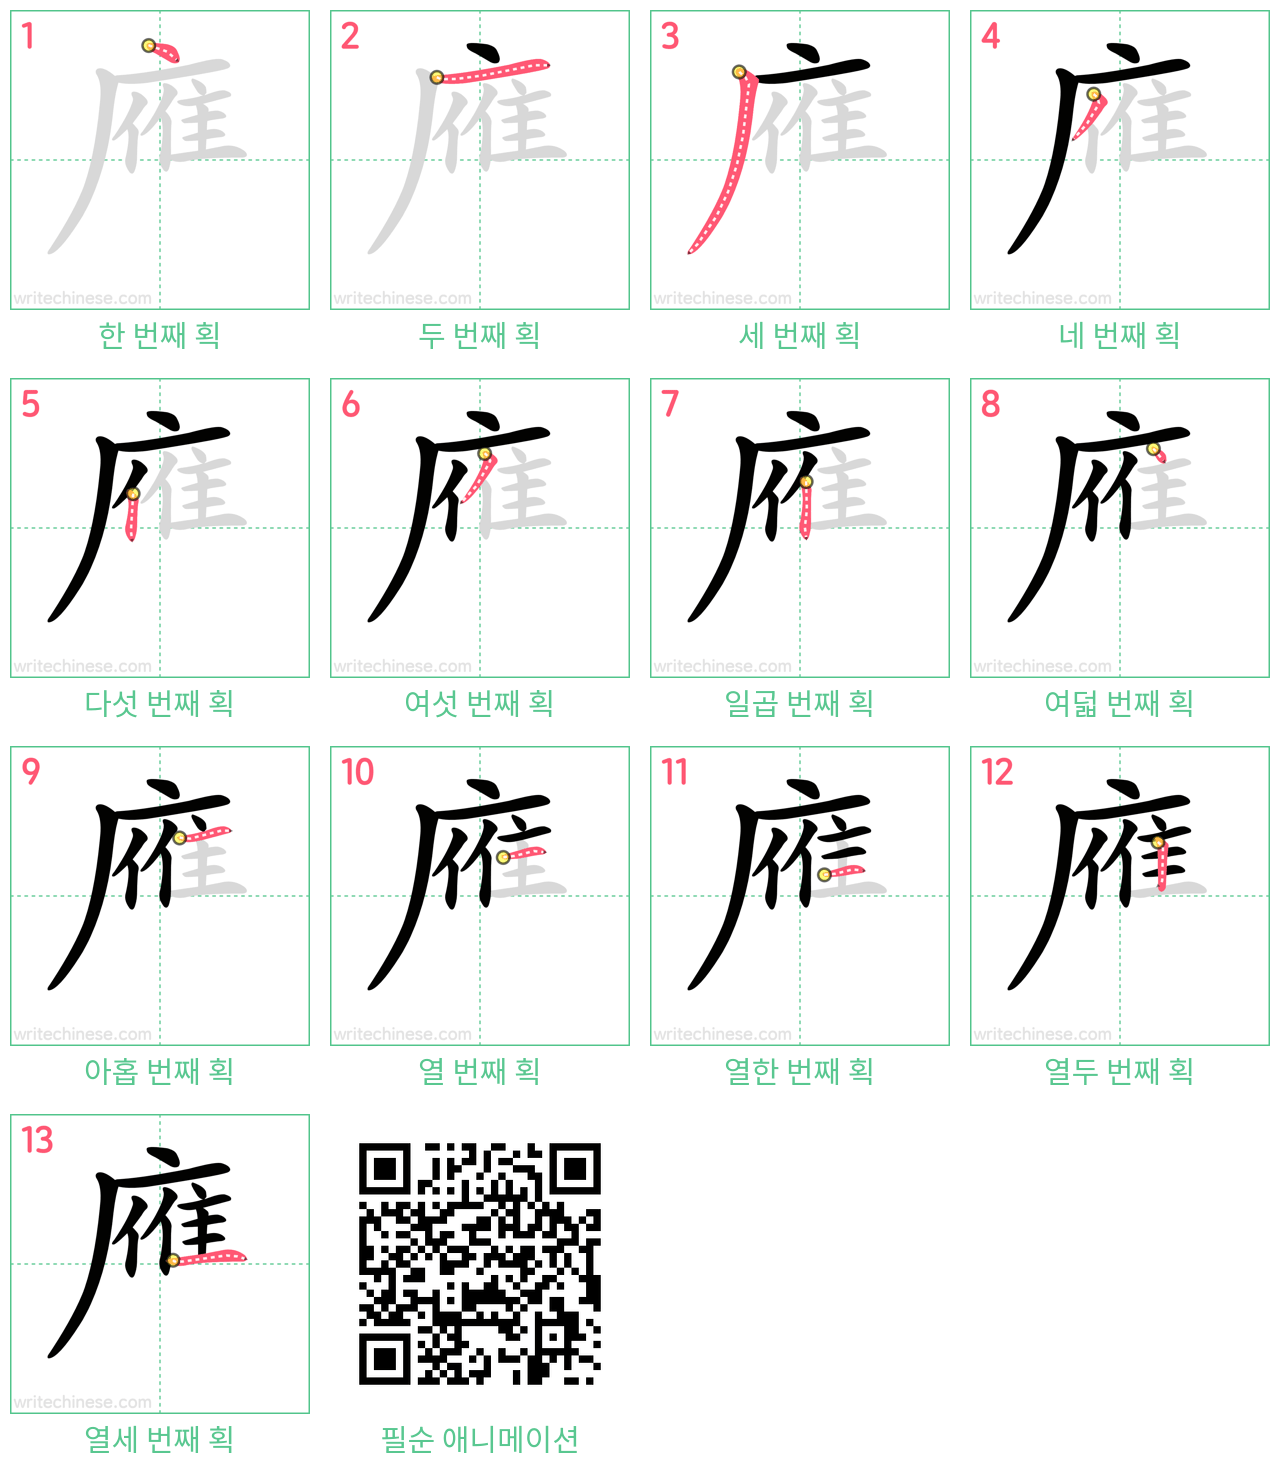 䧹 step-by-step stroke order diagrams